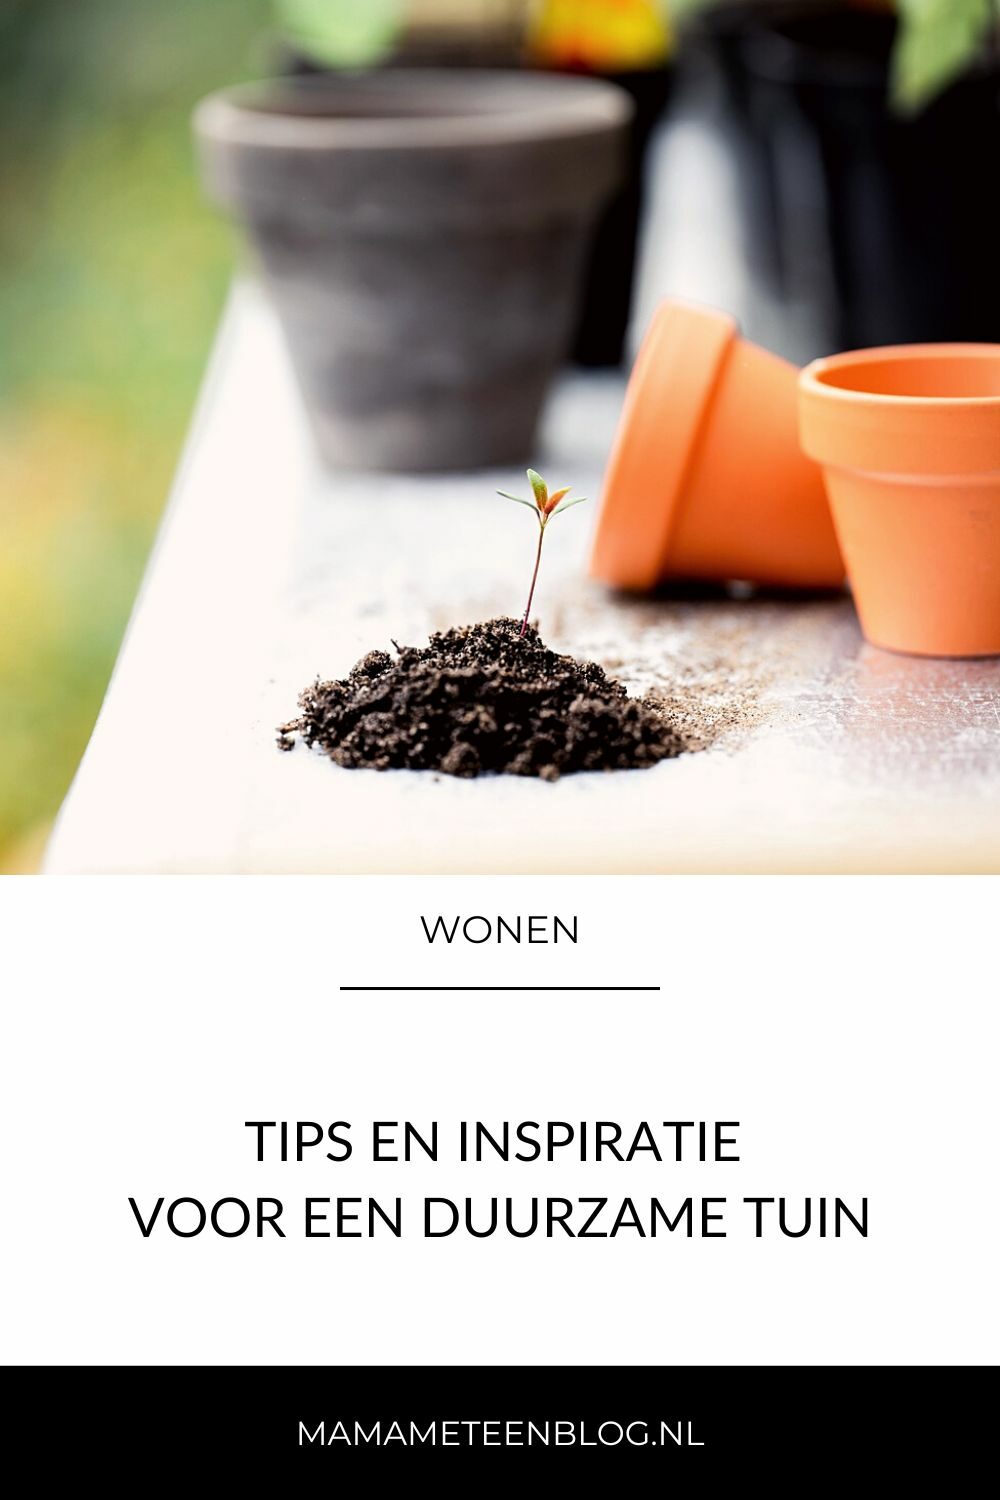 Tips voor een duurzame tuin mamameteenblog.nl